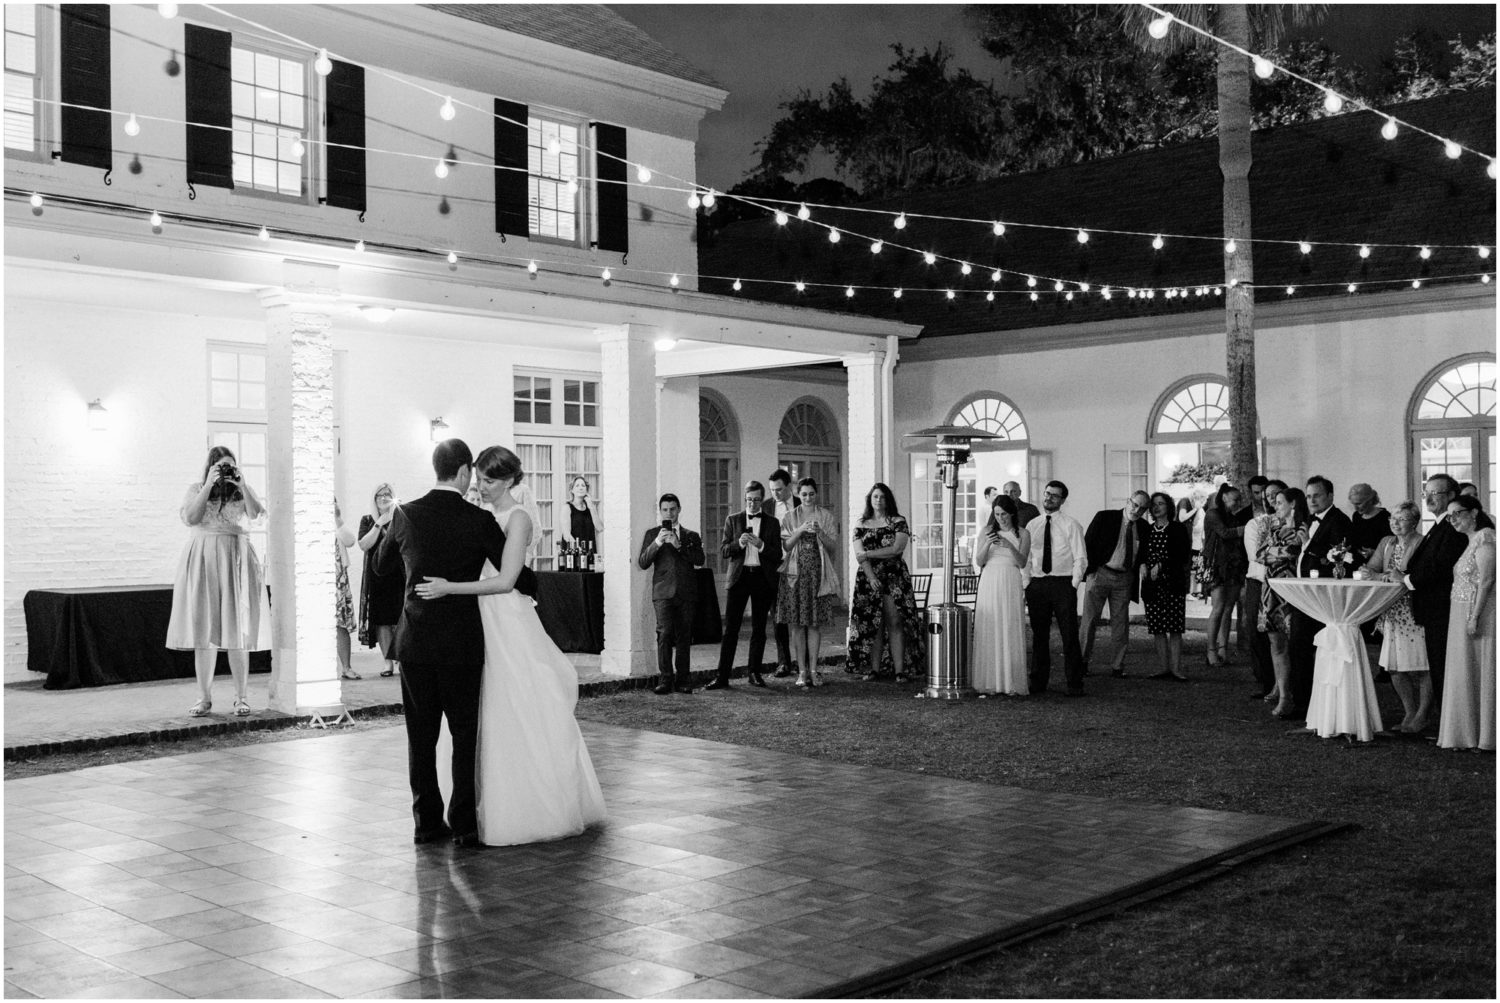 Jacksonville Wedding Photographers, Brooke Images, The Ribault Club, Destination Wedding Photographers, Ashley and Ari's Wedding